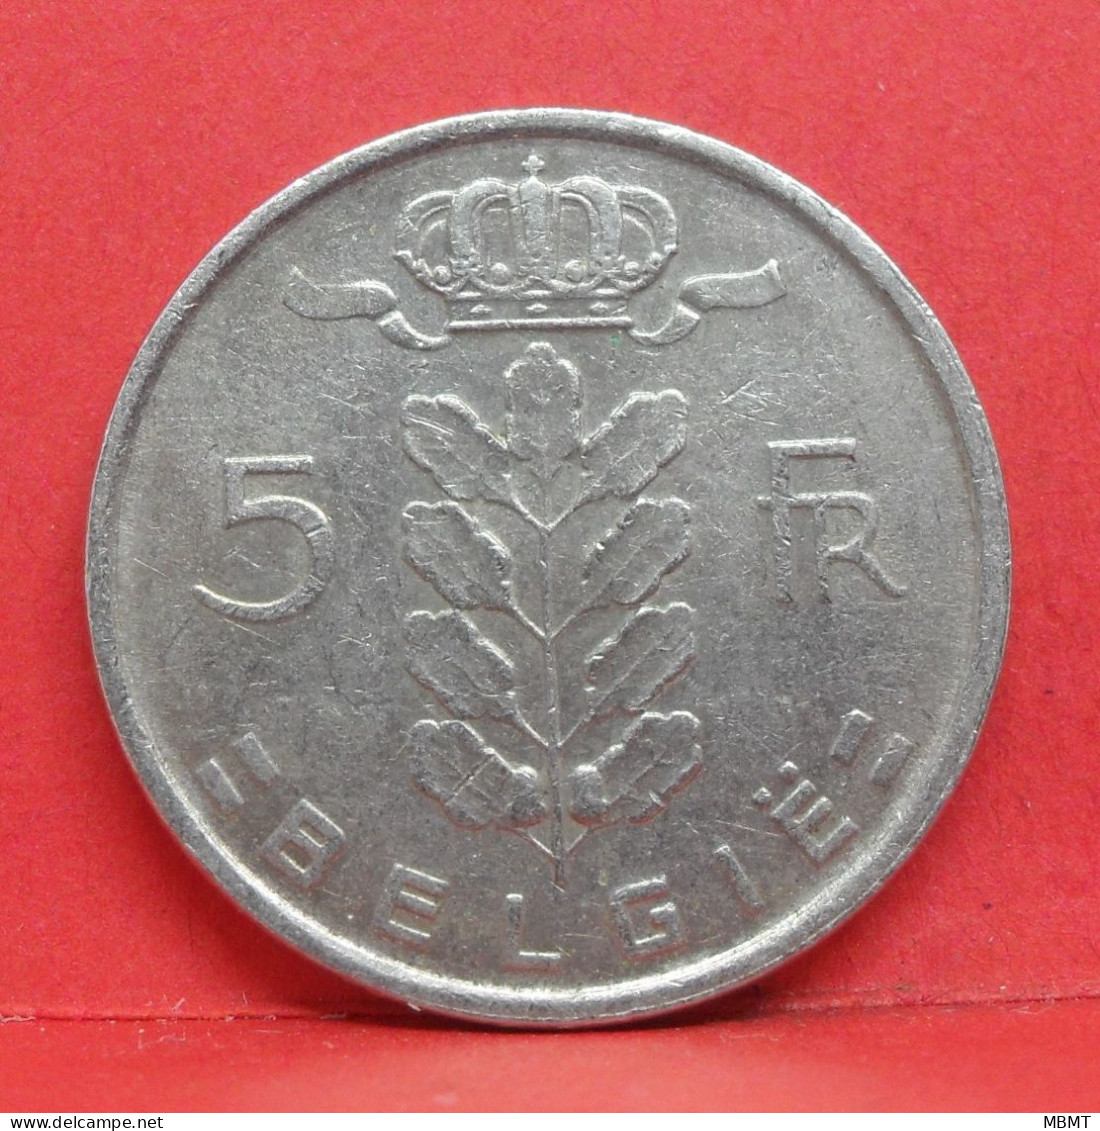 5 Frank 1971 - TB - Pièce Monnaie Belgie - Article N°1992 - 5 Francs